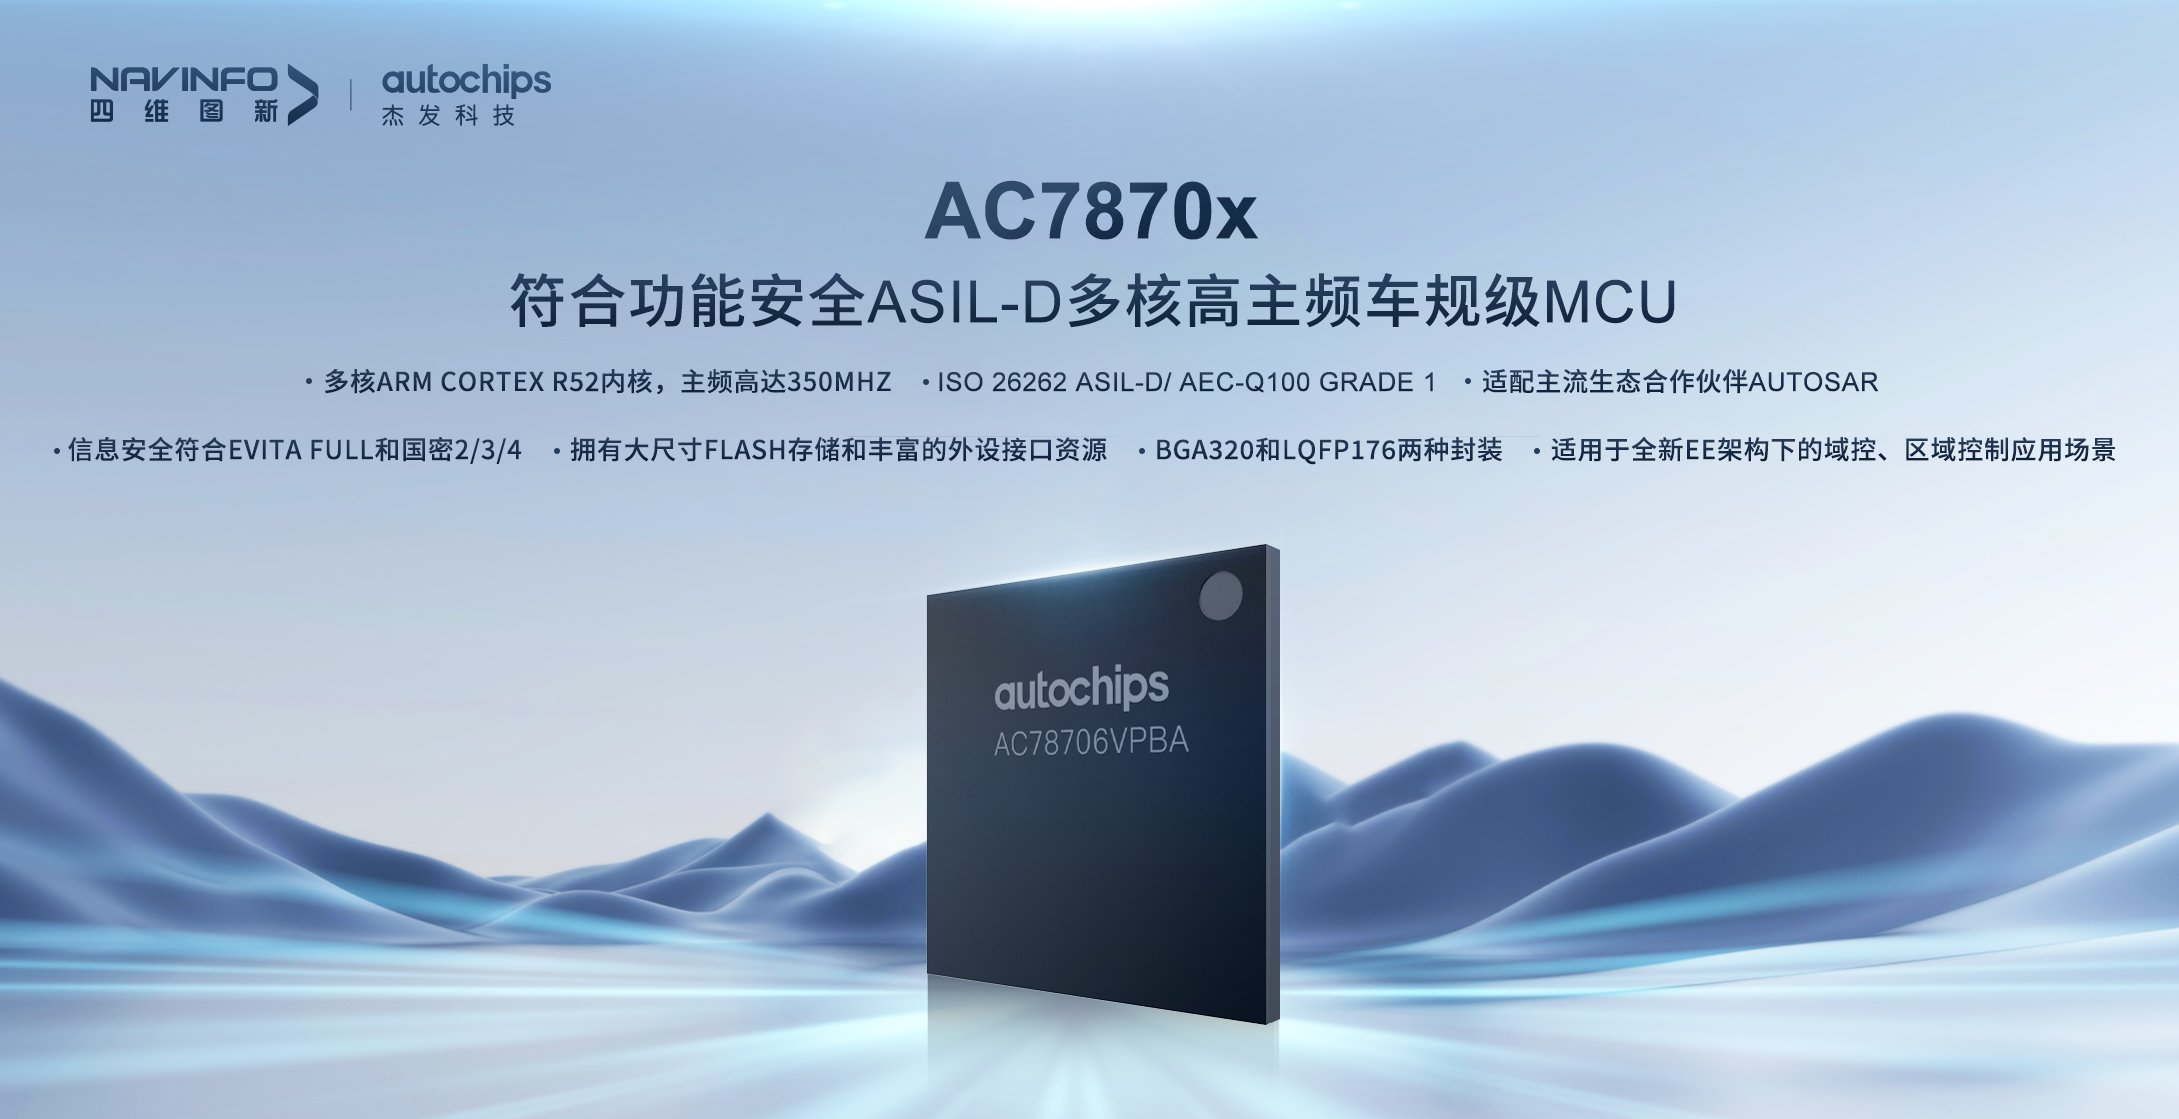 杰發科技發布首款符合功能安全ASIL-D多核高主頻車規MCU芯片AC7870x   布局高端MCU市場